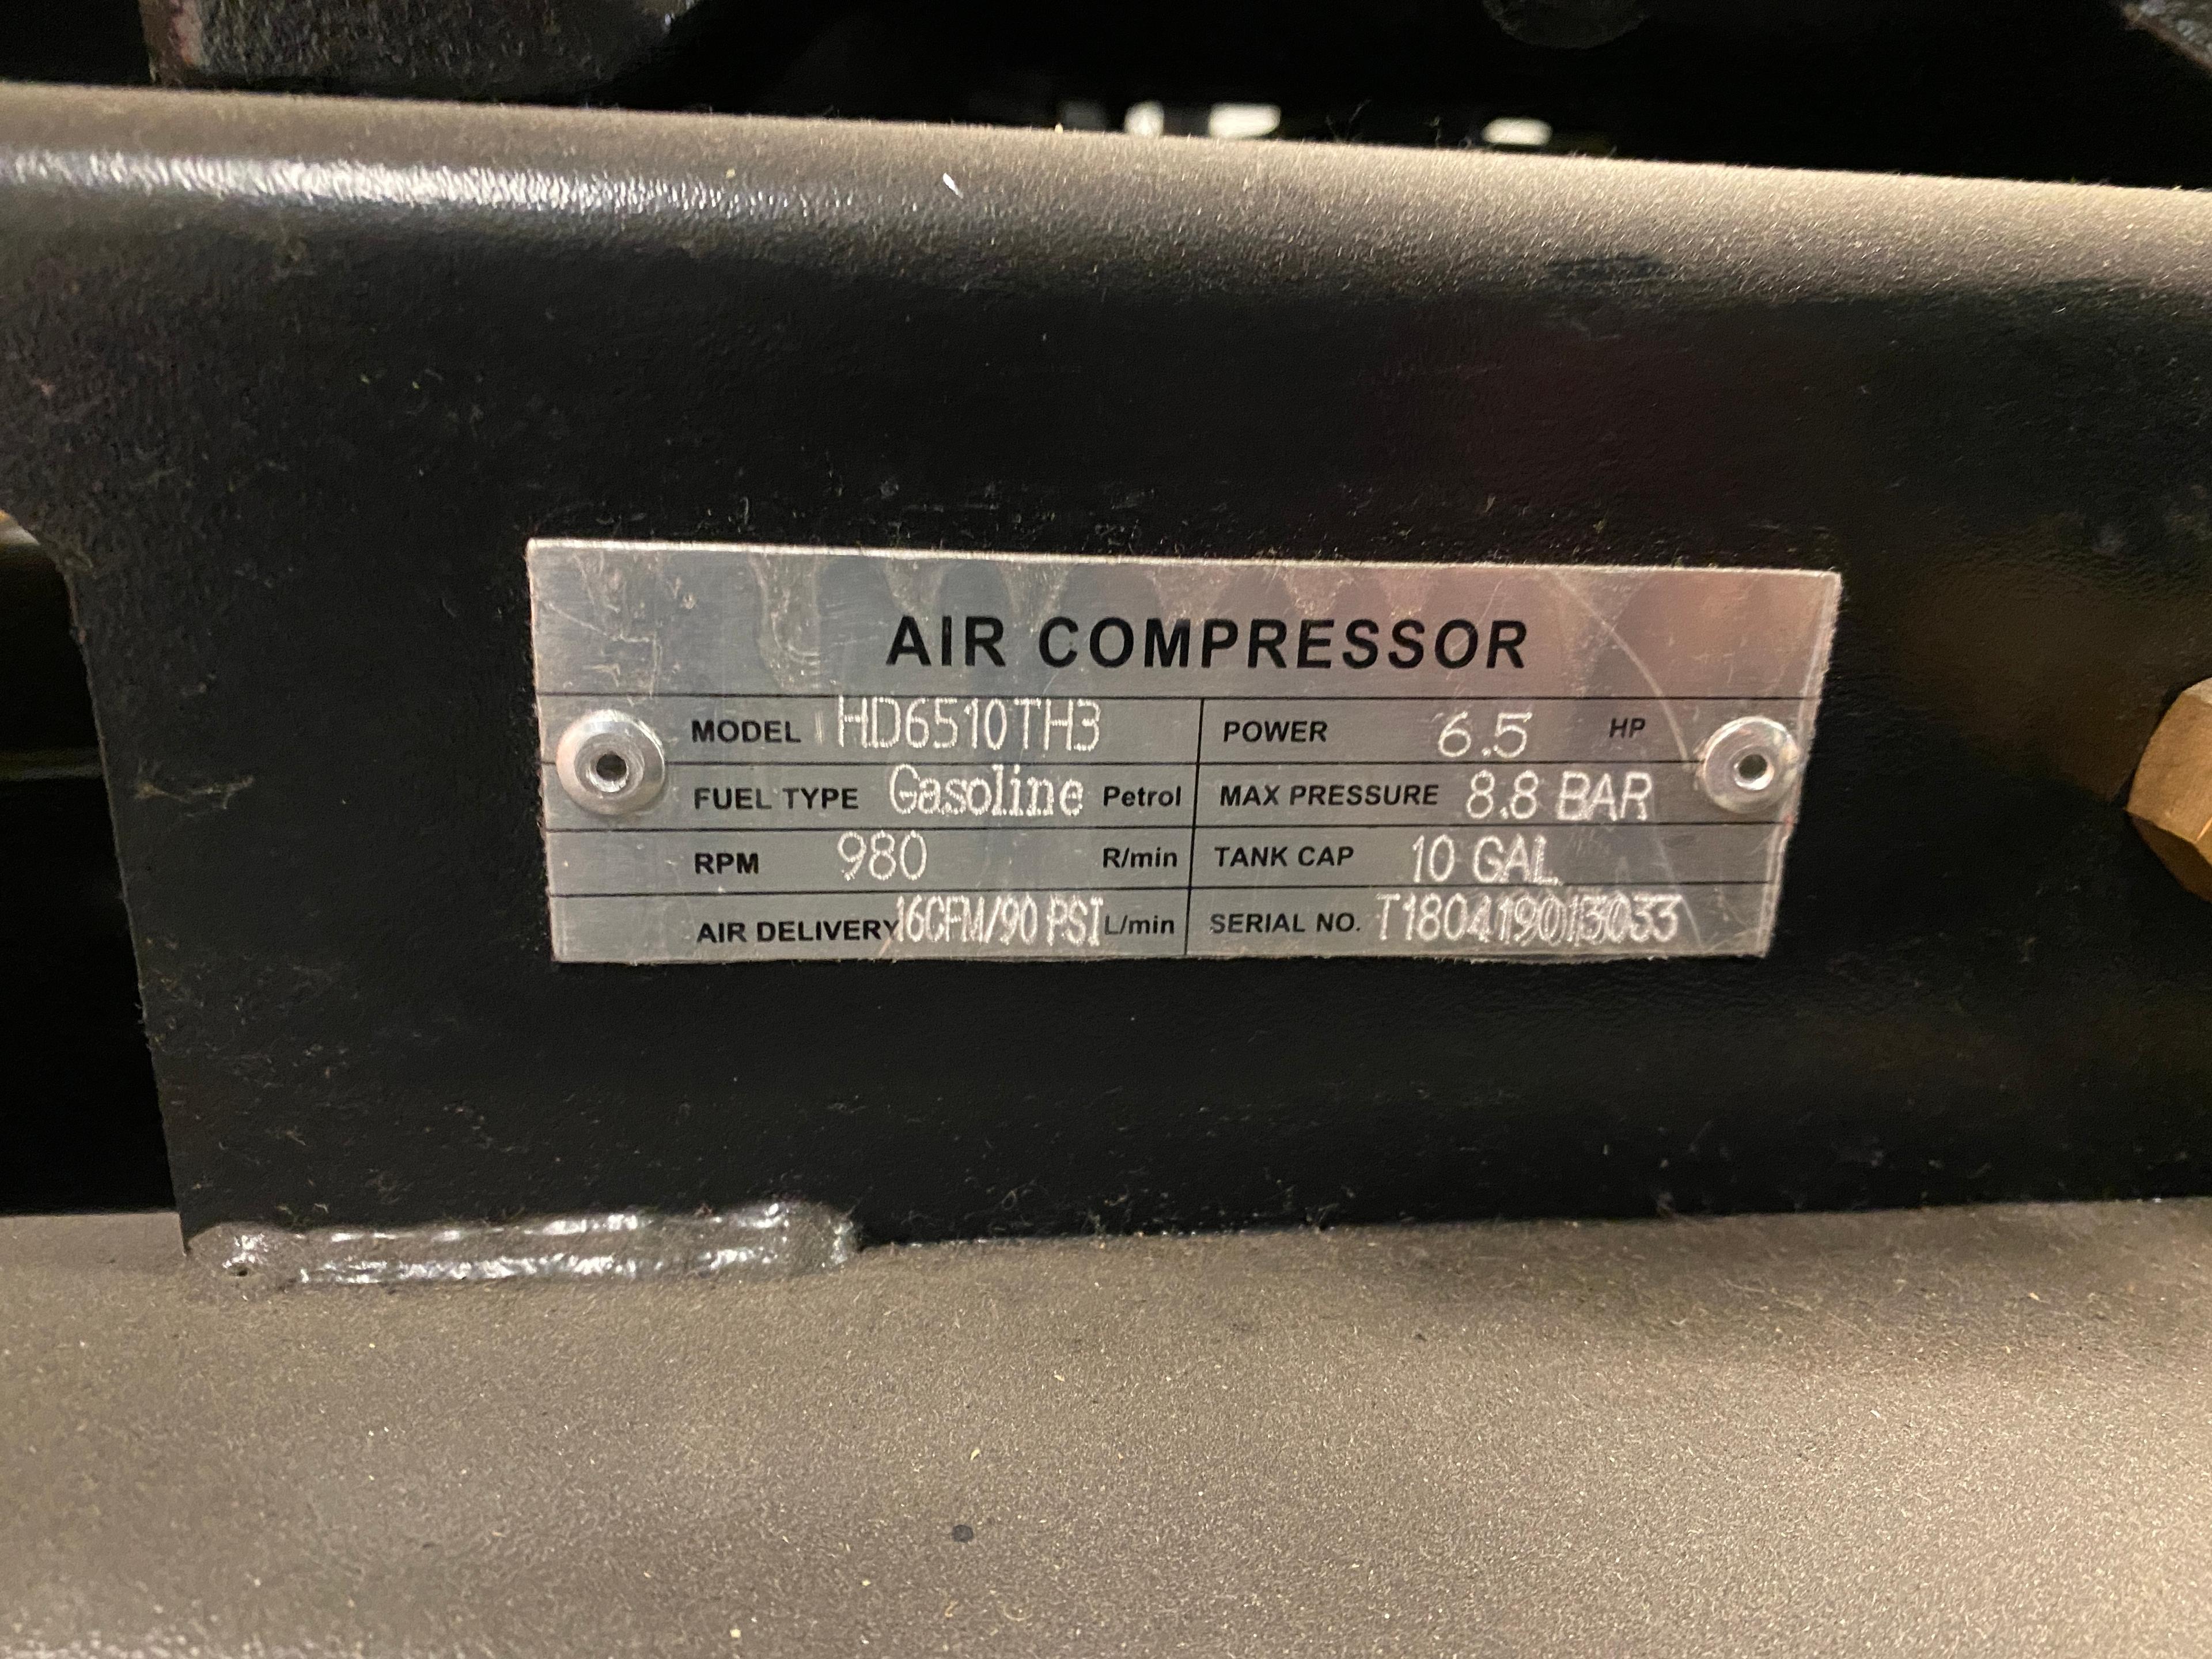 Heavy Duty Power Systems Air Compressor Model HD6510TH3; S/N T180419013033